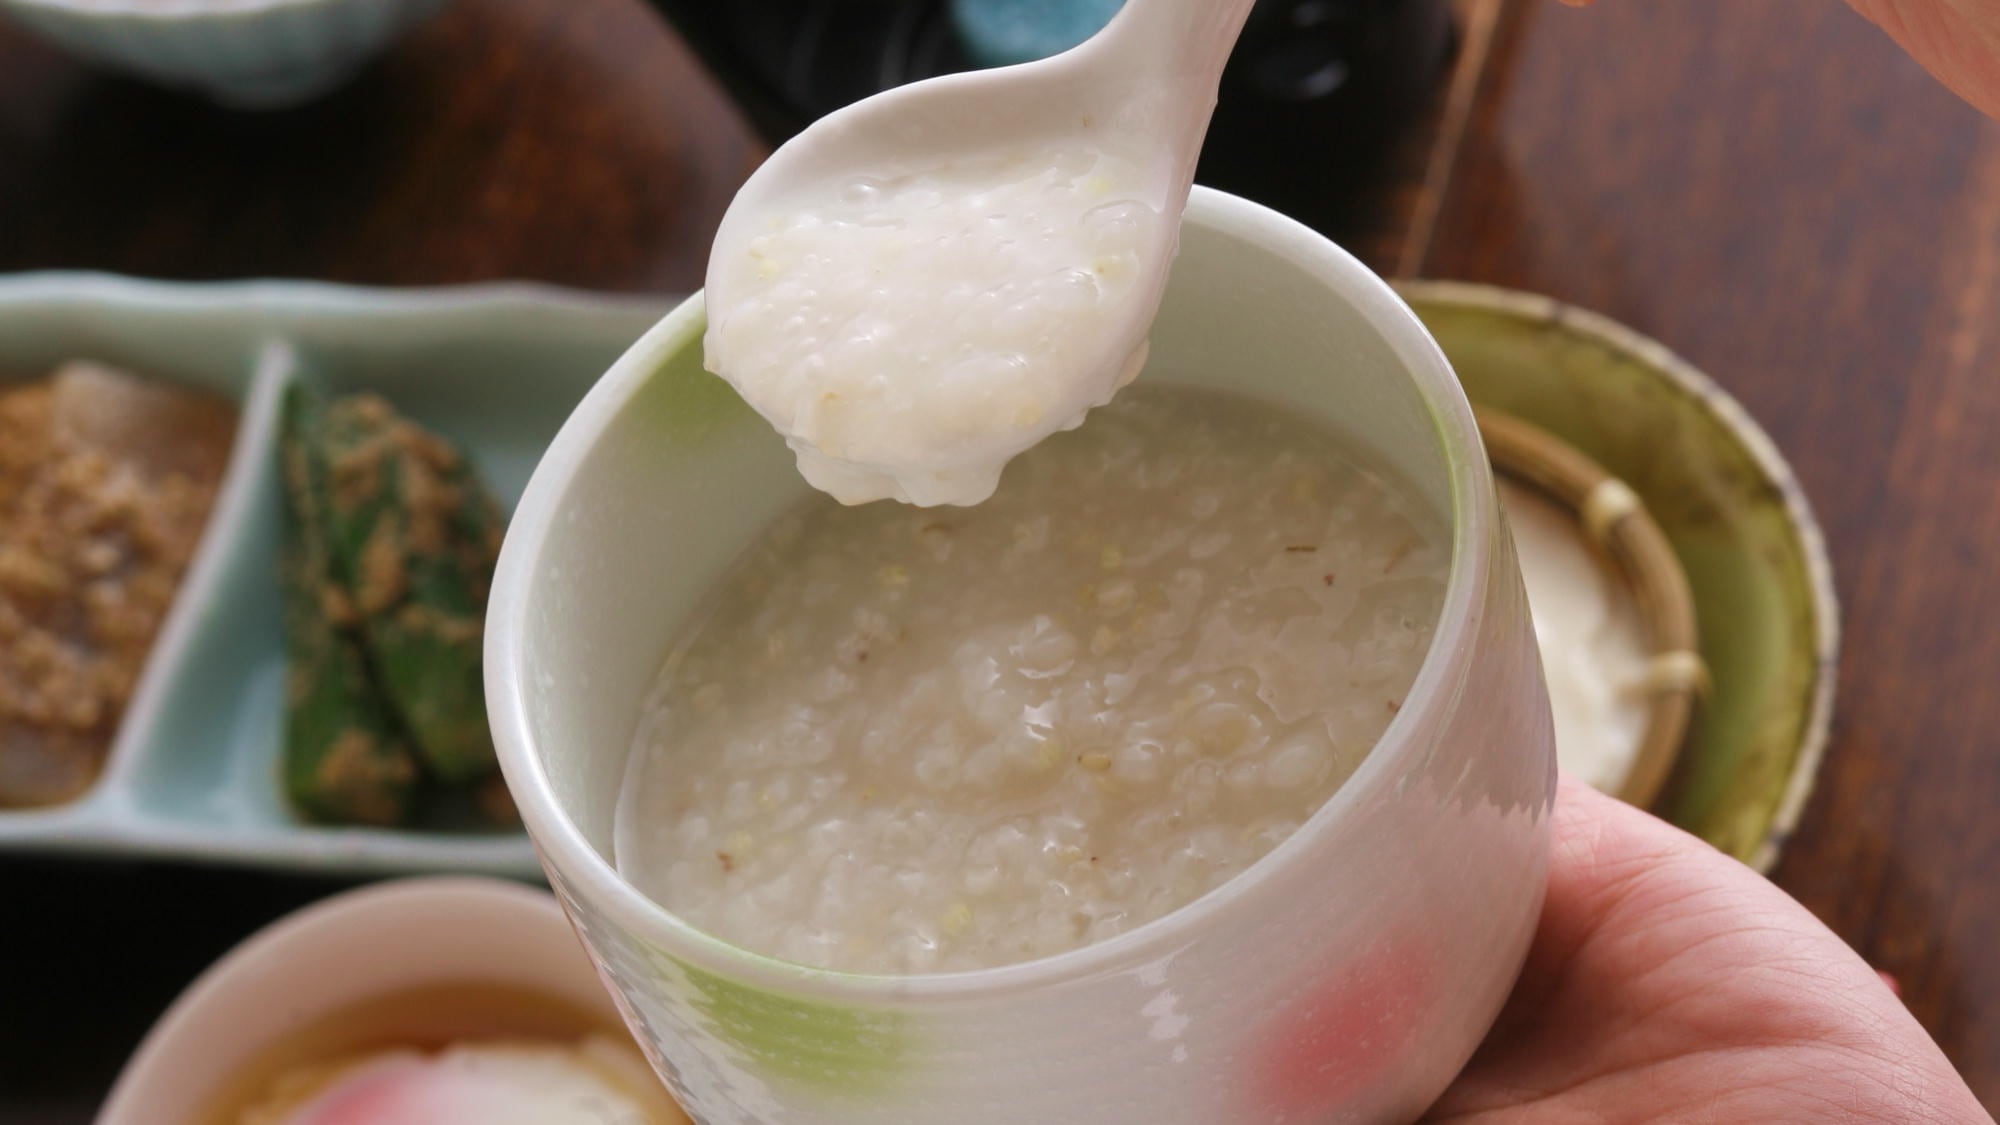 [Breakfast example] Please enjoy the hotel's prized "exquisite rice porridge".